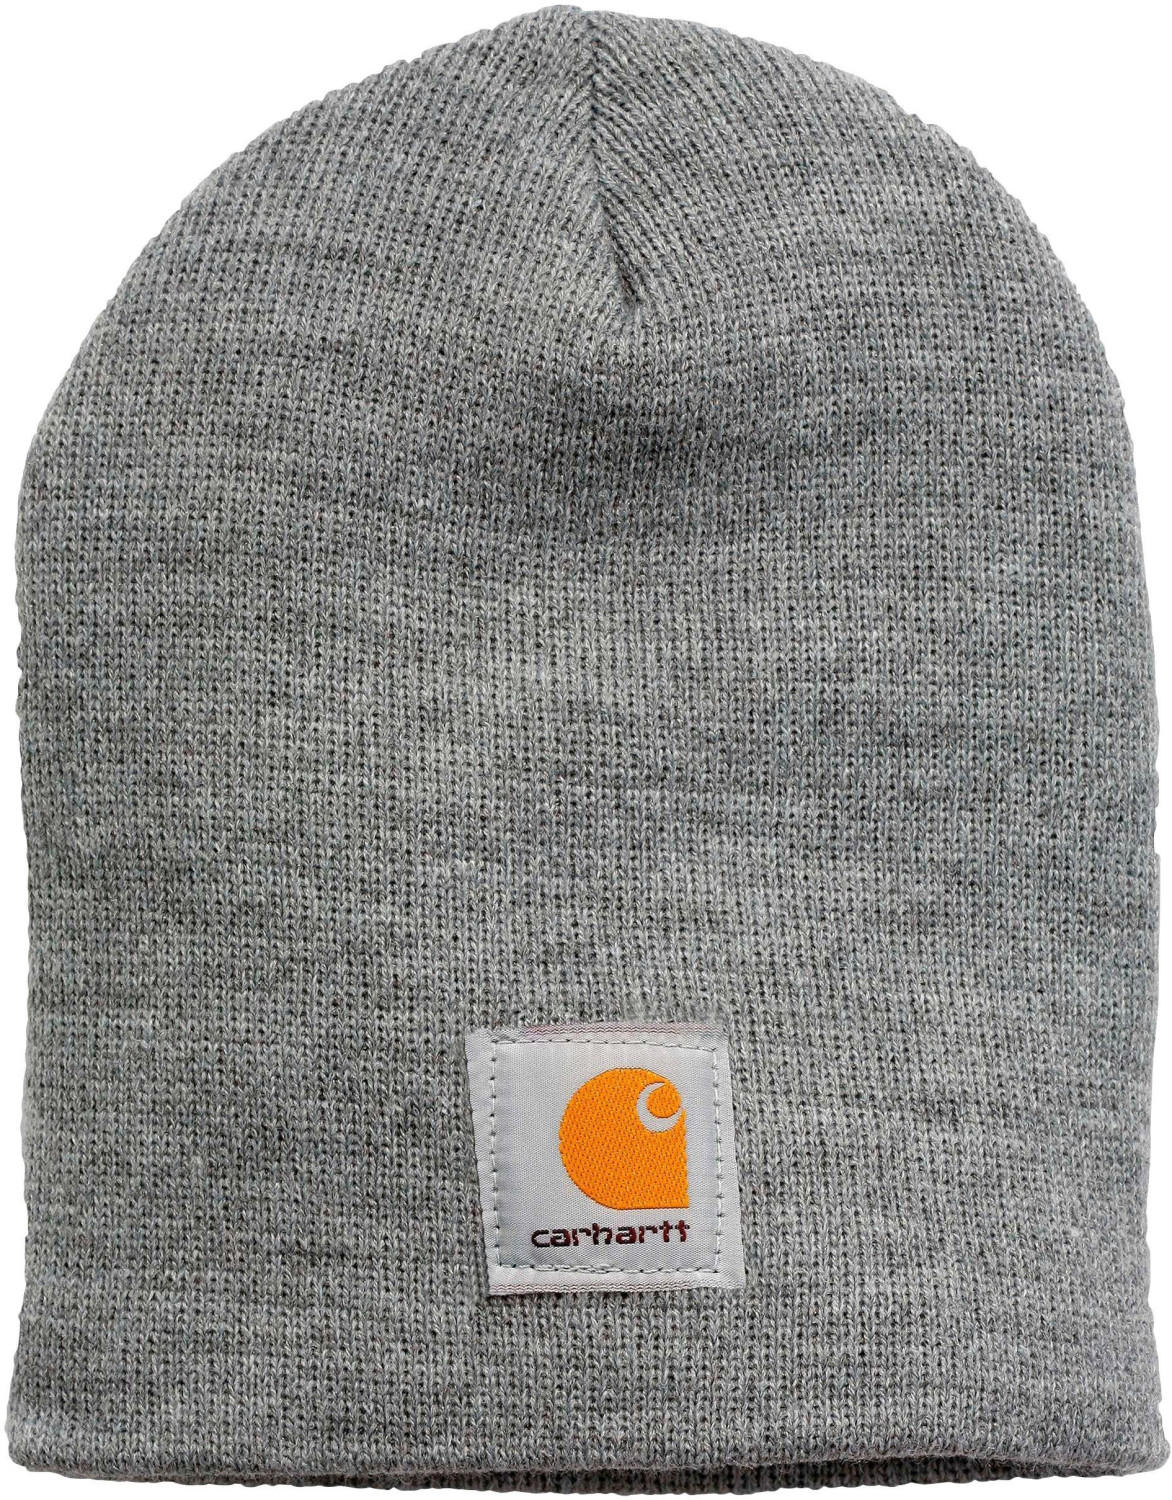 Carhartt Knit Hat (A205) heather grey